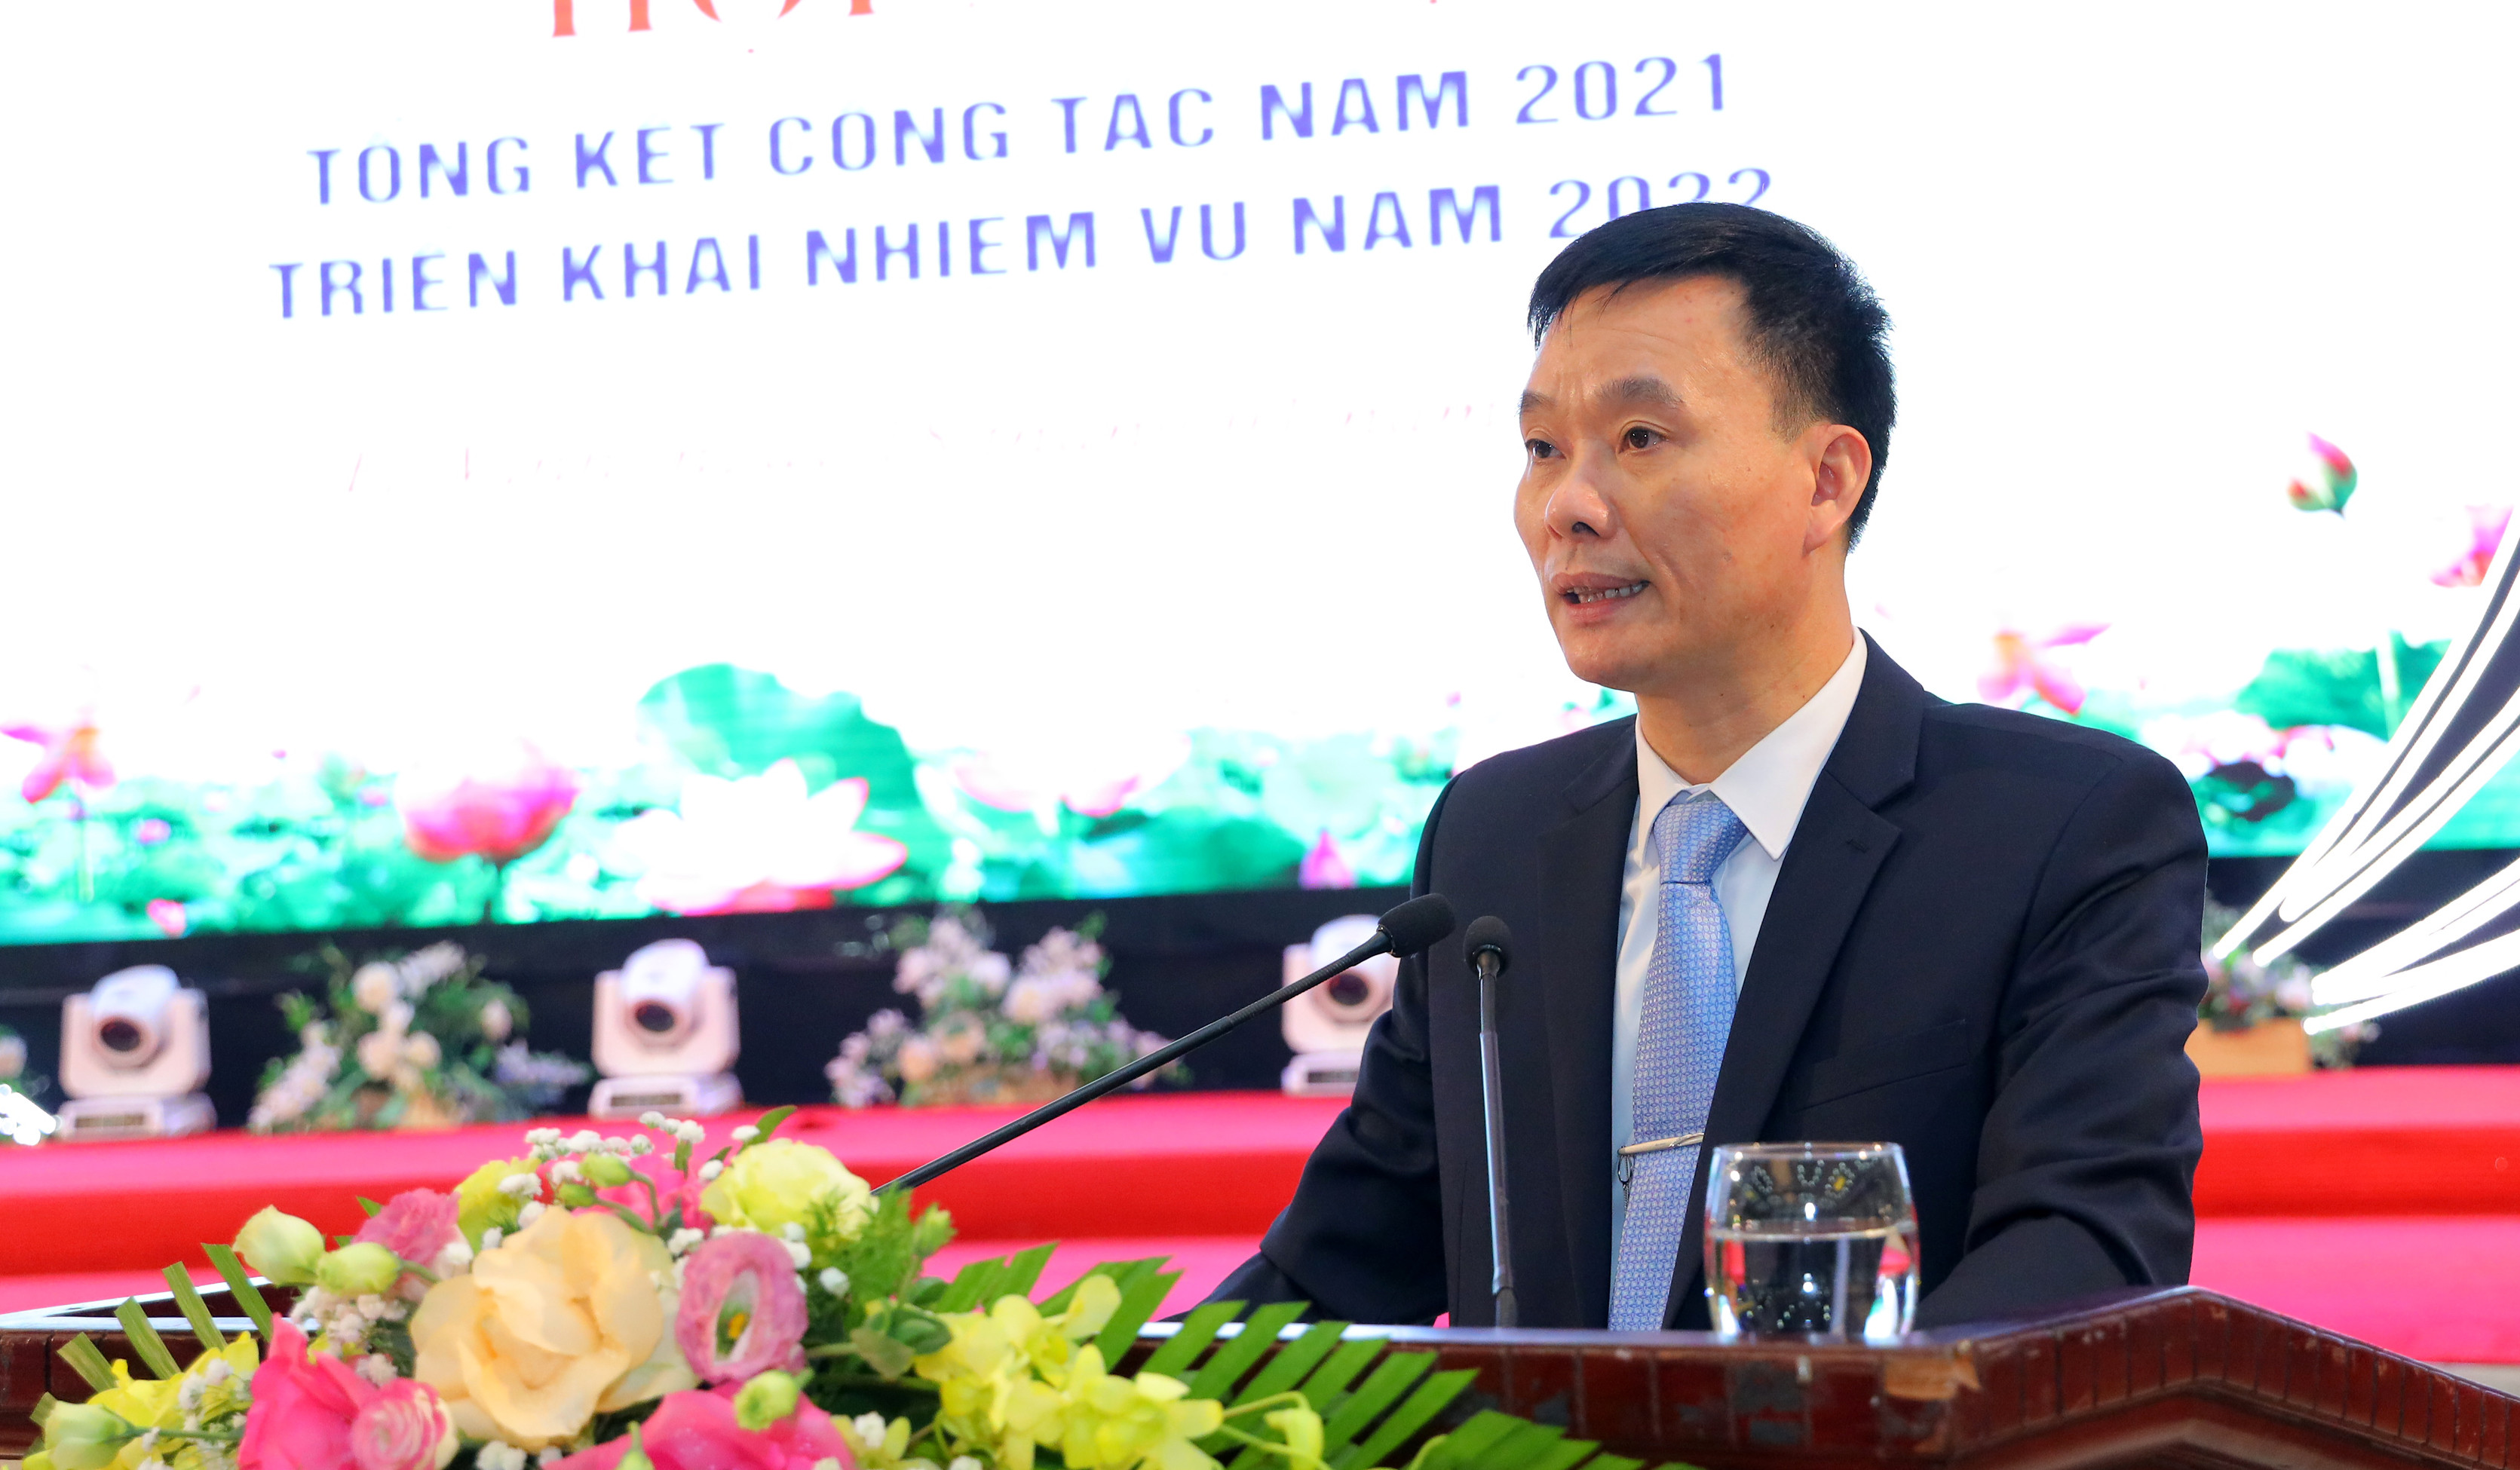 Ông Nguyễn Văn Hải - Phó Trưởng ban quản lý KKT Đông Nam trình bày báo cáo tổng kết hoạt động năm 2021 và những giải pháp thực hiện nhiệm vụ năm 2022. Ảnh Nguyên Sơn